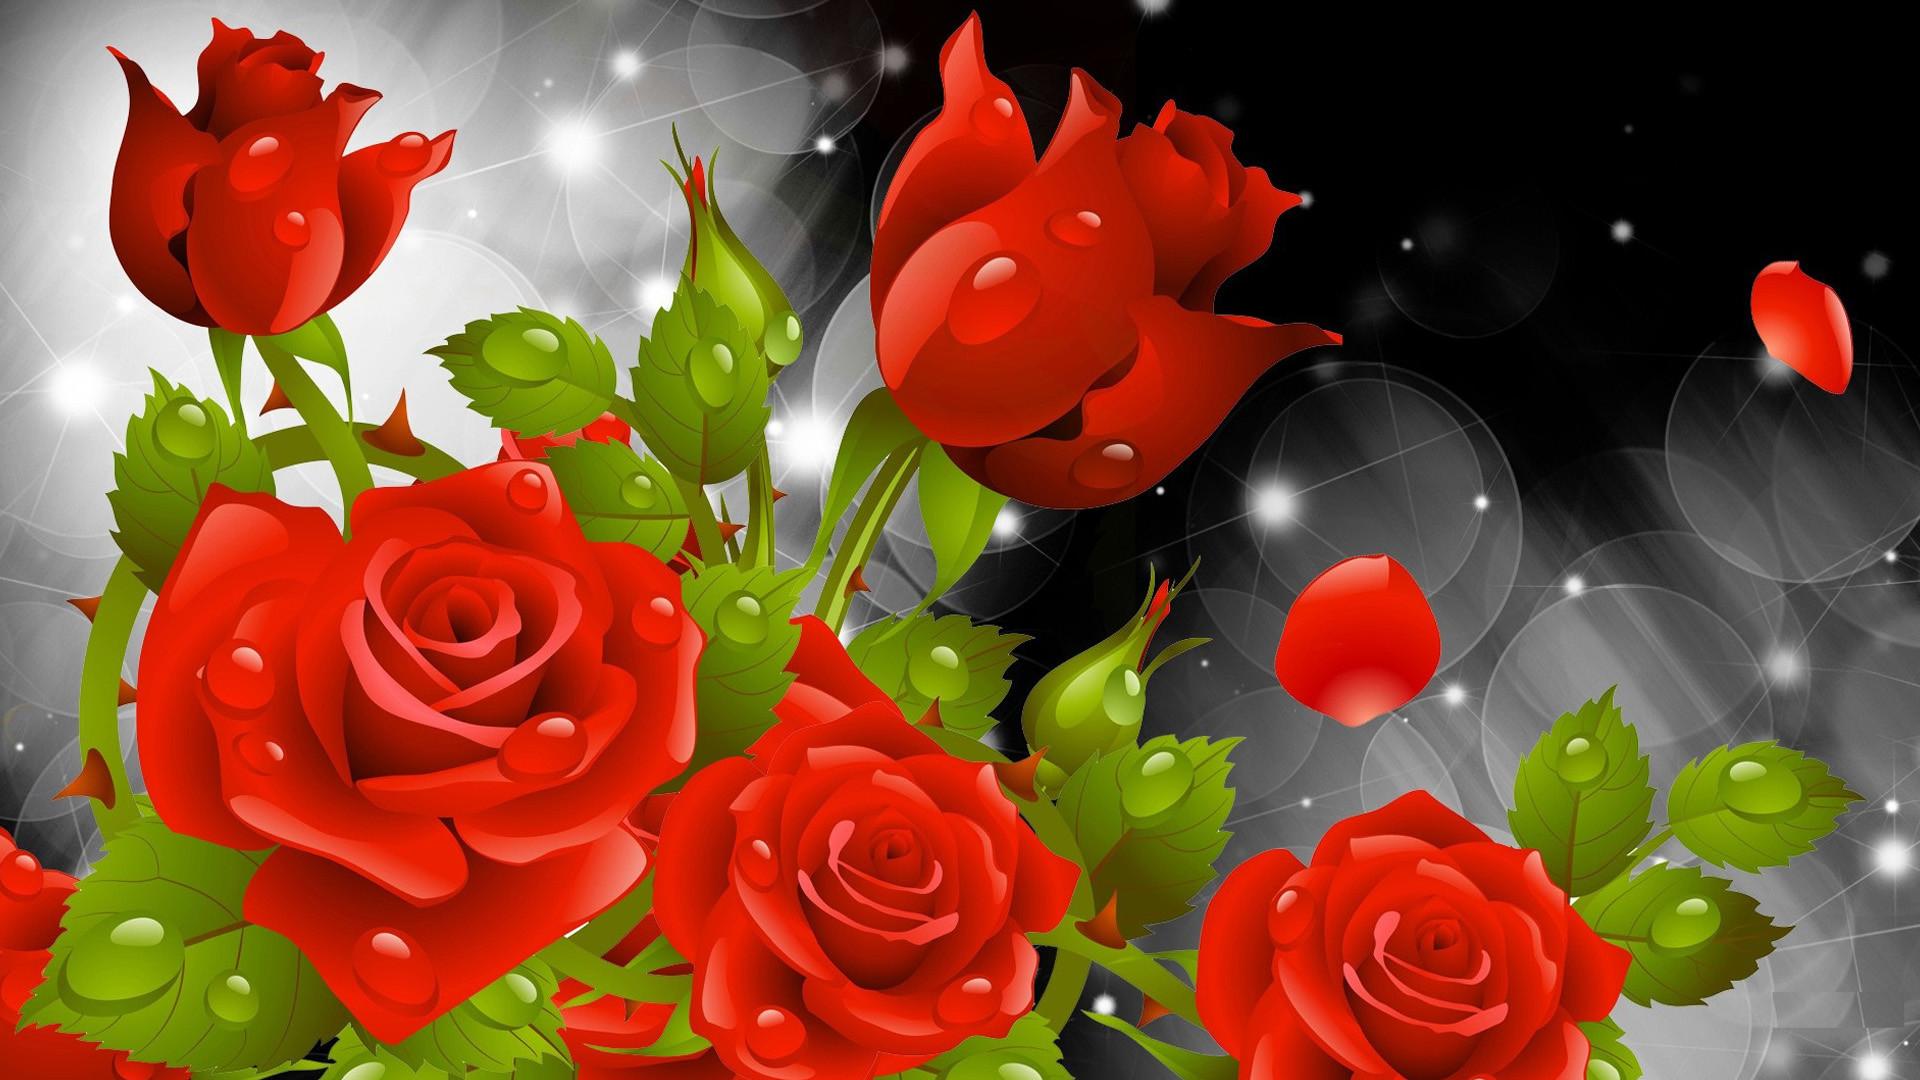 Rose Flower Wallpaper for Desktop